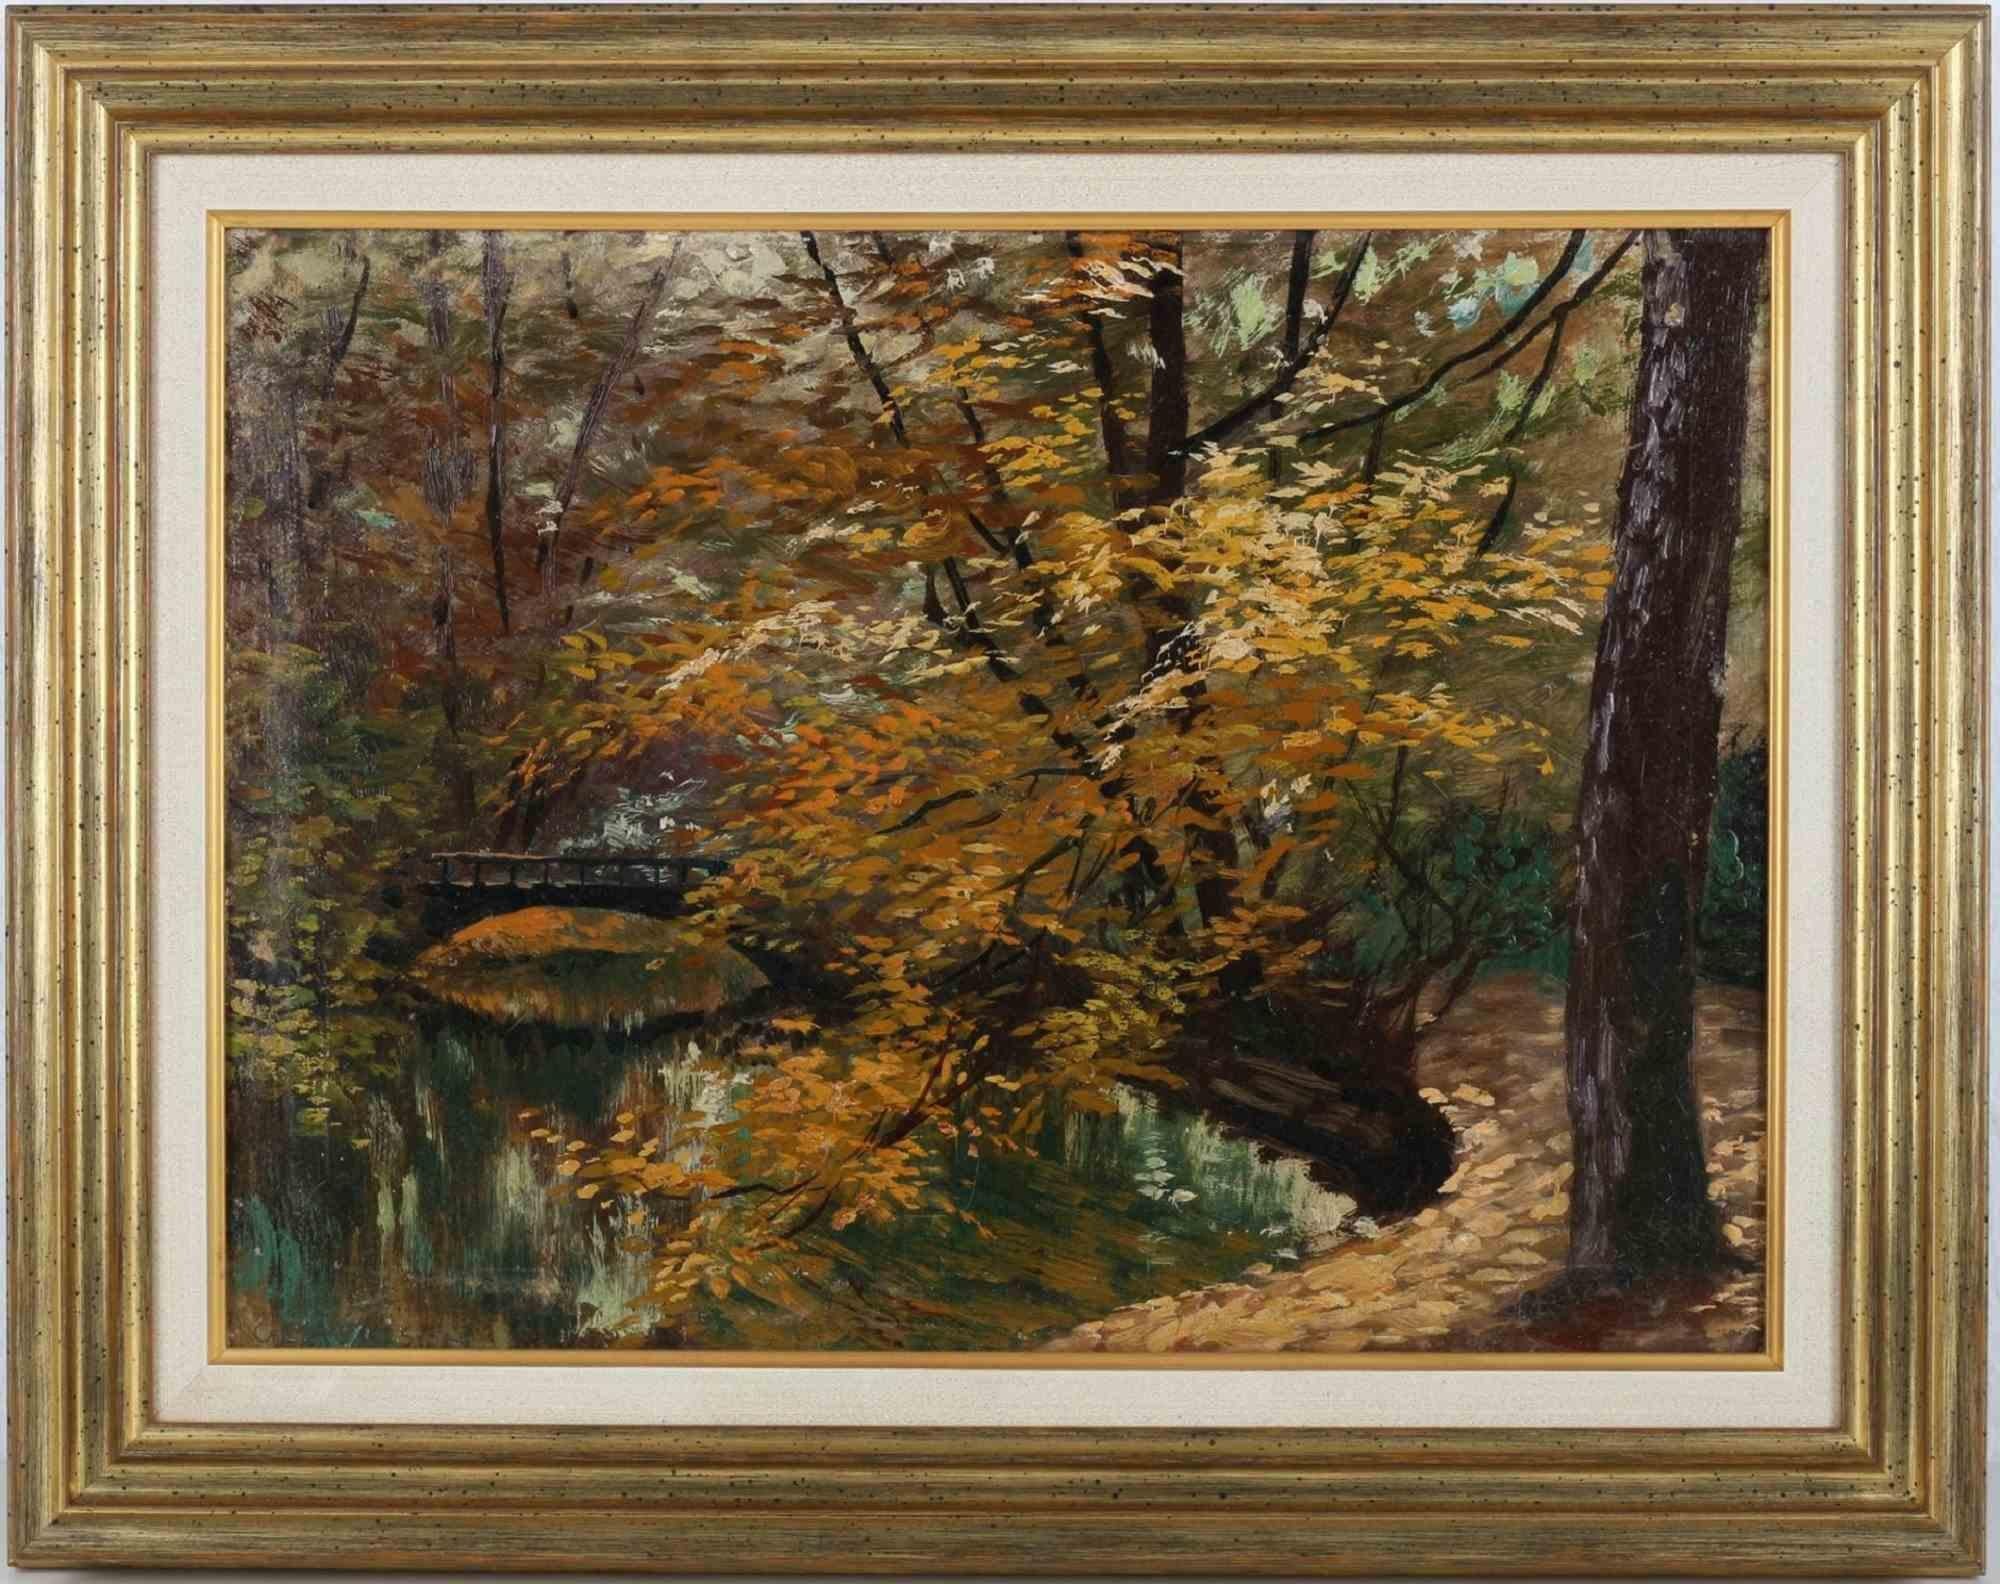 Autumn Forest - Oil on plate by Gerhard Haenisch - 19th Century